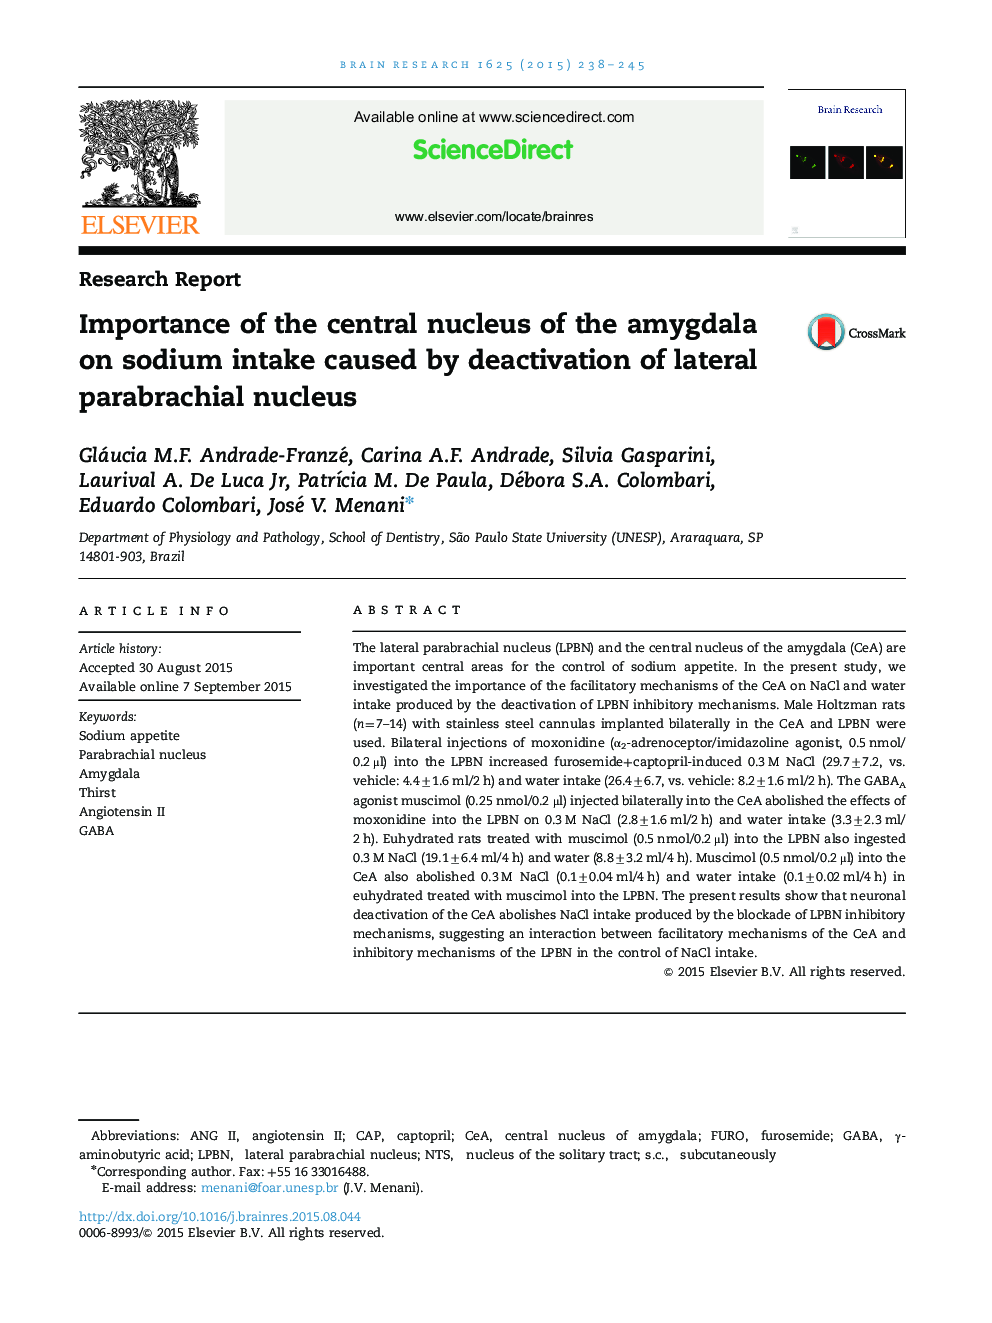 گزارش تحقیقات مهم هسته مرکزی آمیگدال بر مصرف سدیم ناشی از غیر فعال کردن هسته پاراباژیال جانبی 